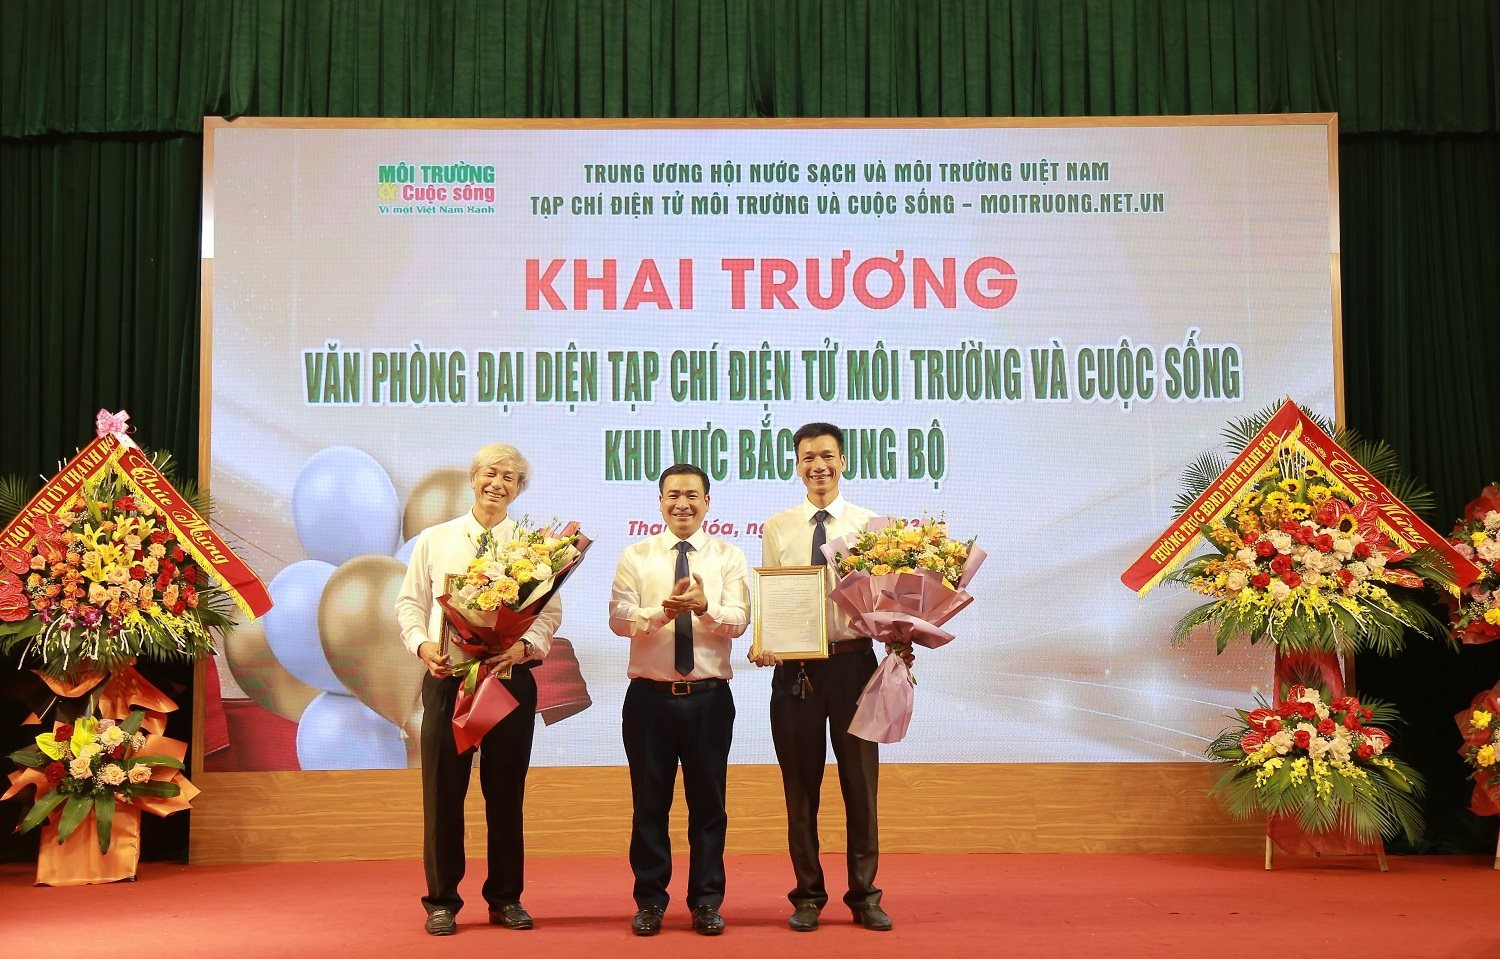 Tổng biên tập Tạp chí điện tử Môi trường và Cuộc sống trao quyết định cho ông Lê Hoài Châu làm Trưởng văn phòng đại diện tại Thanh Hóa.